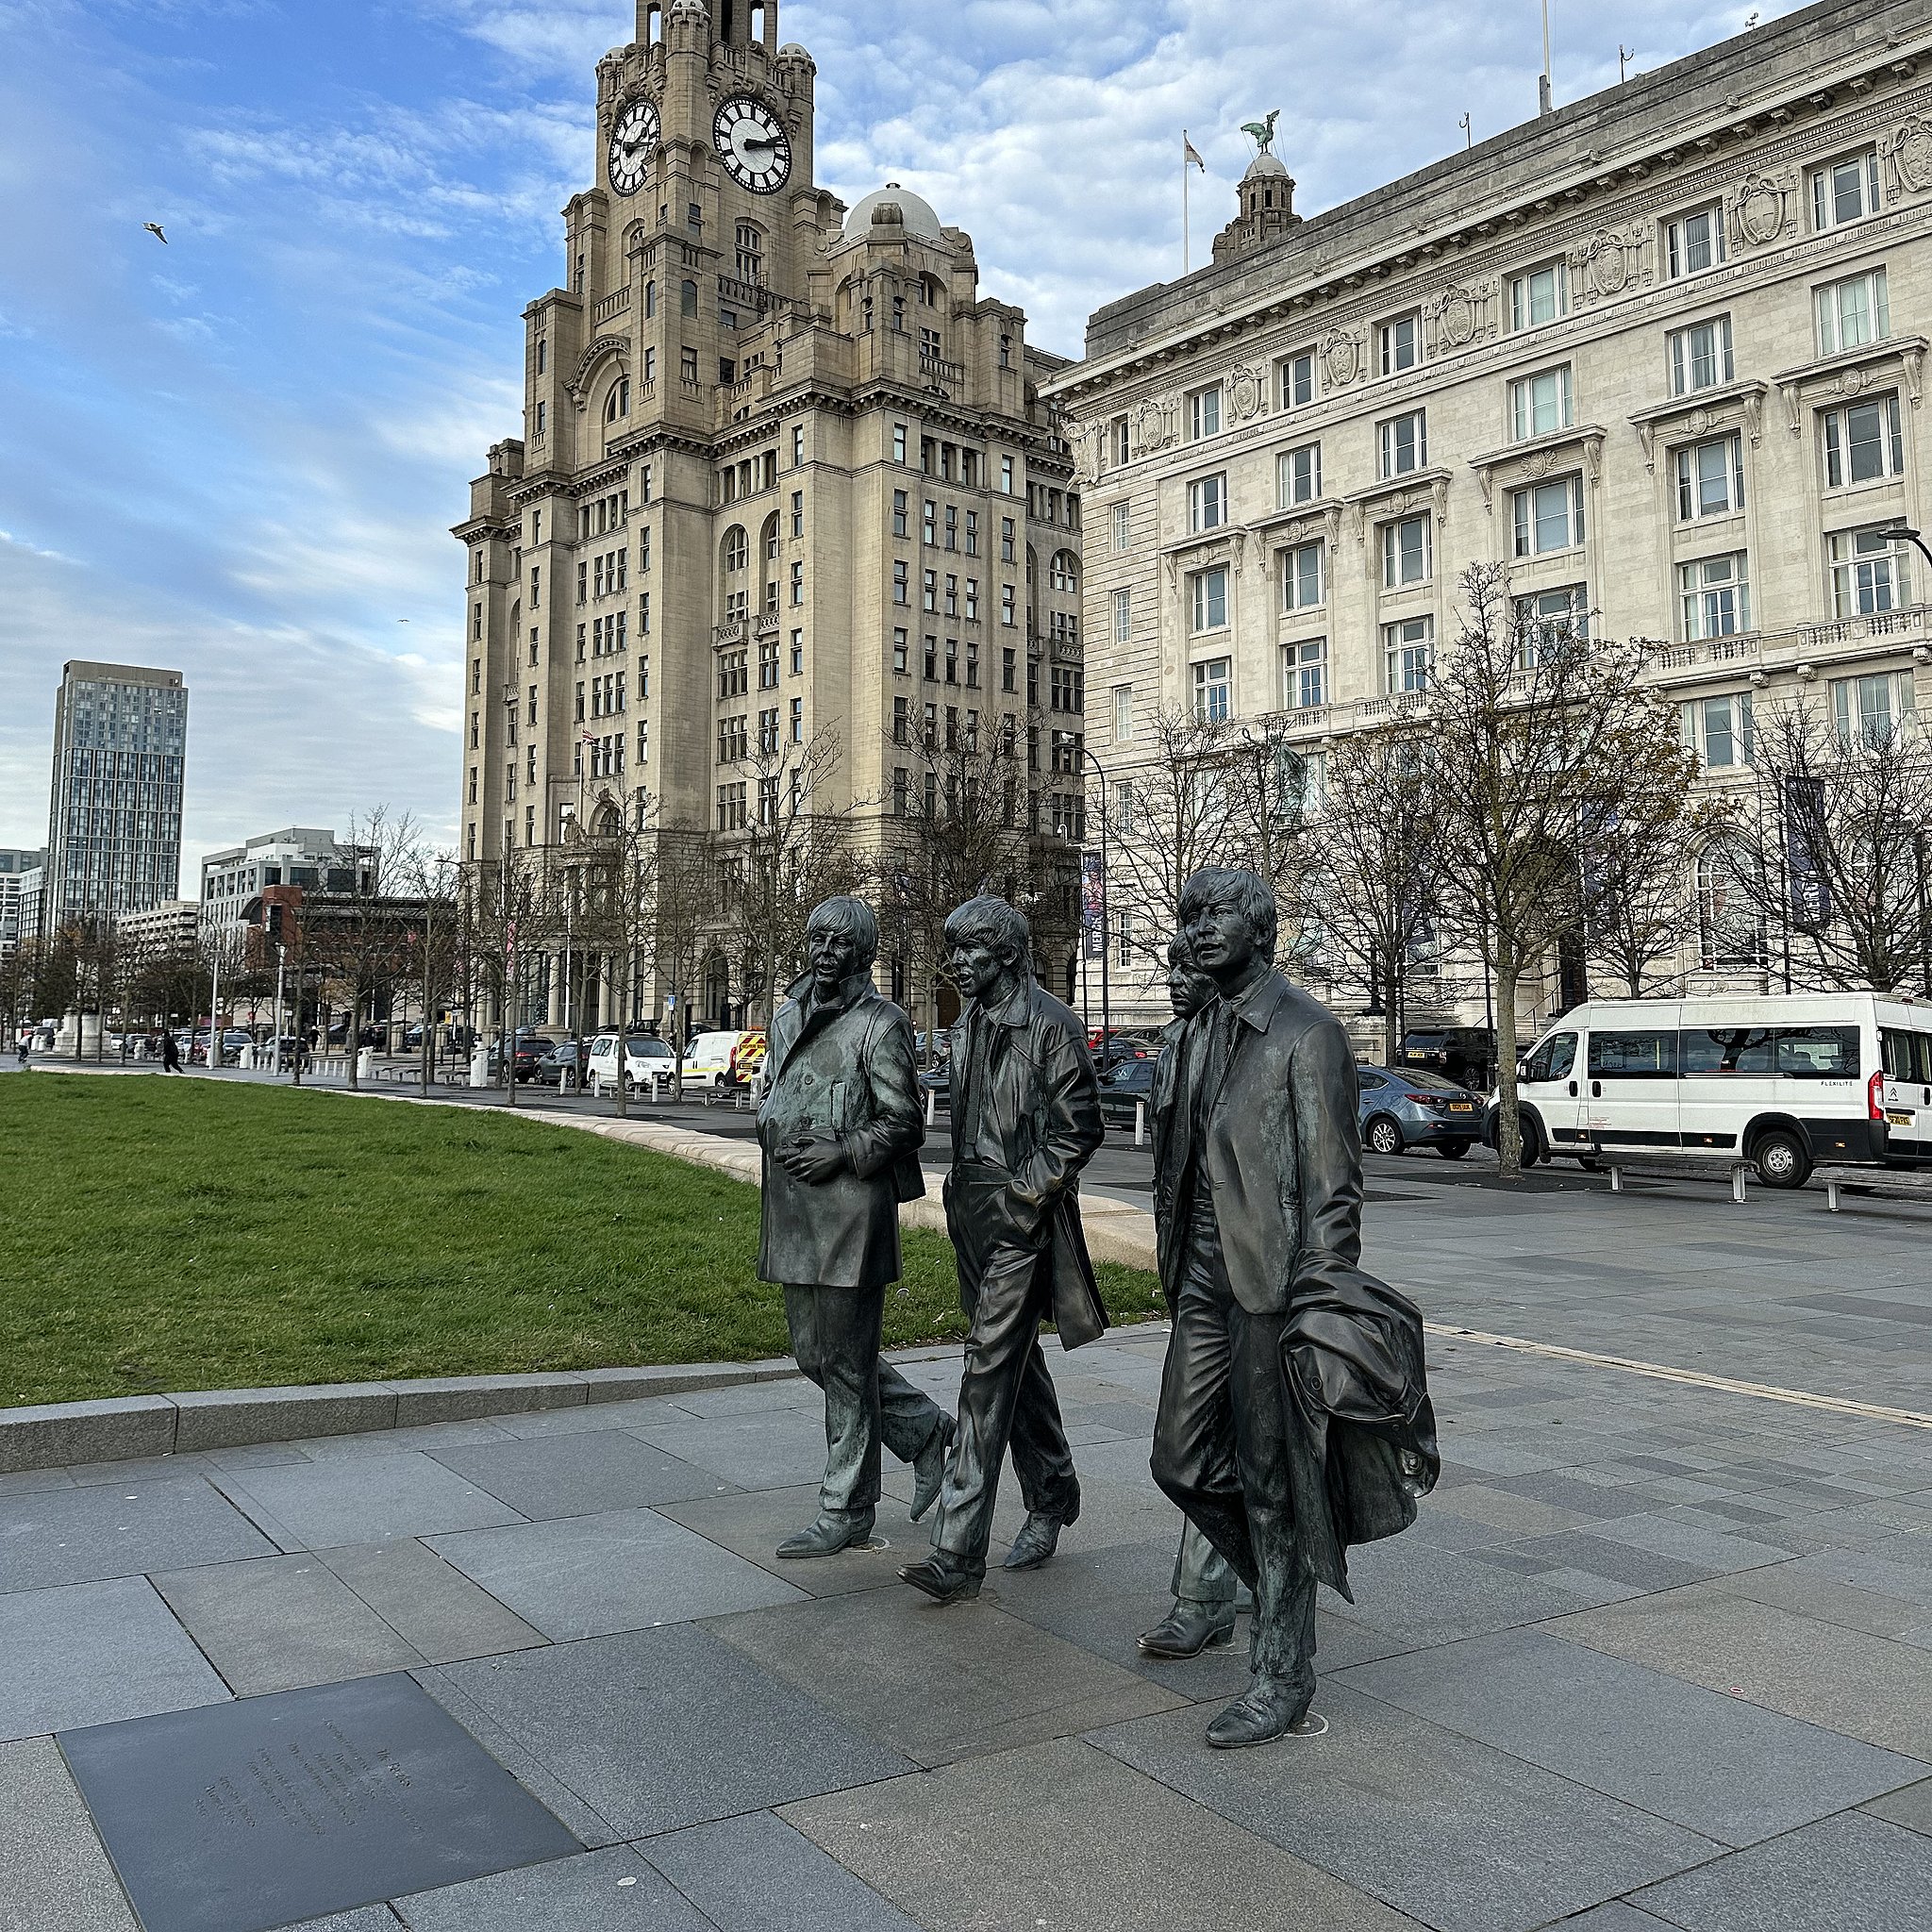 Det er ikke kun på stadions, der bliver sunget i Liverpool. Bandet The Beatles sætter stadig sit aftryk på byen. Her på havnefronten i byen.